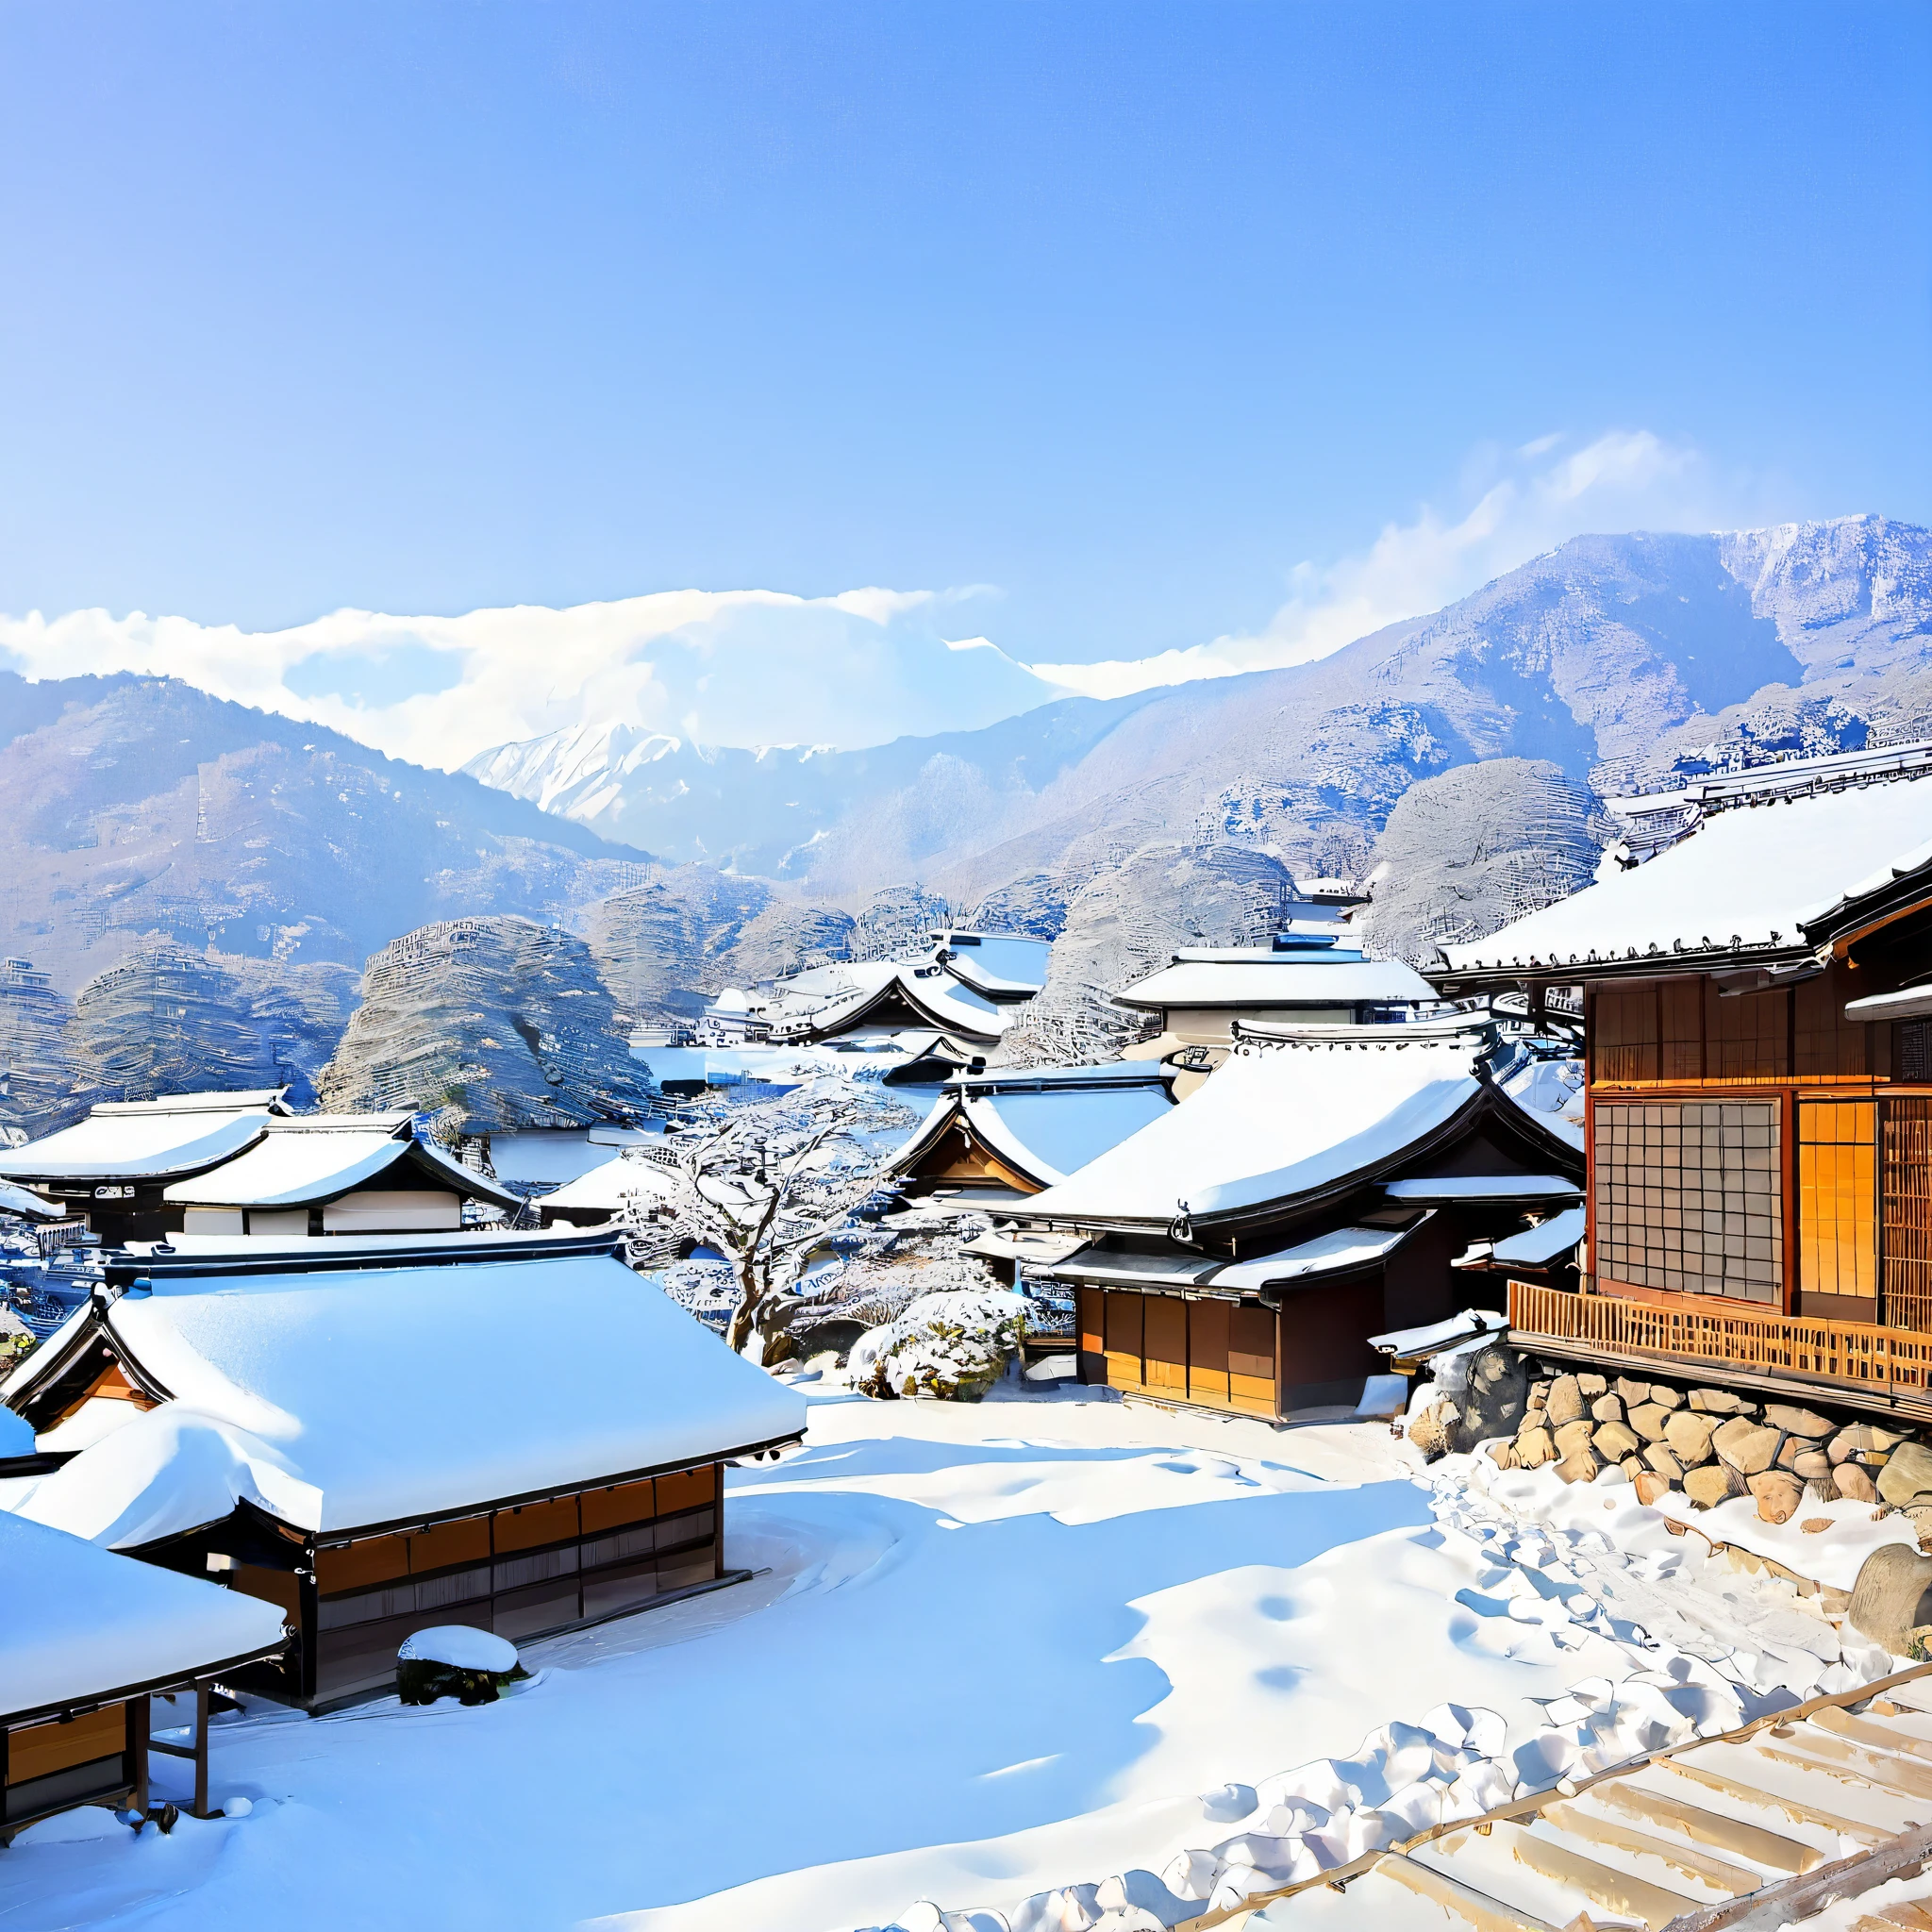 
描述一下日本的冬季风景, 使用季节和地区的特色元素. 包括白雪覆盖的山脉等细节, 雪花装饰的树, 晴朗的蓝天, 远处是一座传统的日本村庄，屋顶上覆盖着积雪，烟囱里冒着轻柔的烟雾, 以及松鼠和兔子等野生动物的存在. 传达宁静的感觉, 魔法, 以及这片风景所激发的原始之美, 用生动、诗意的语言.